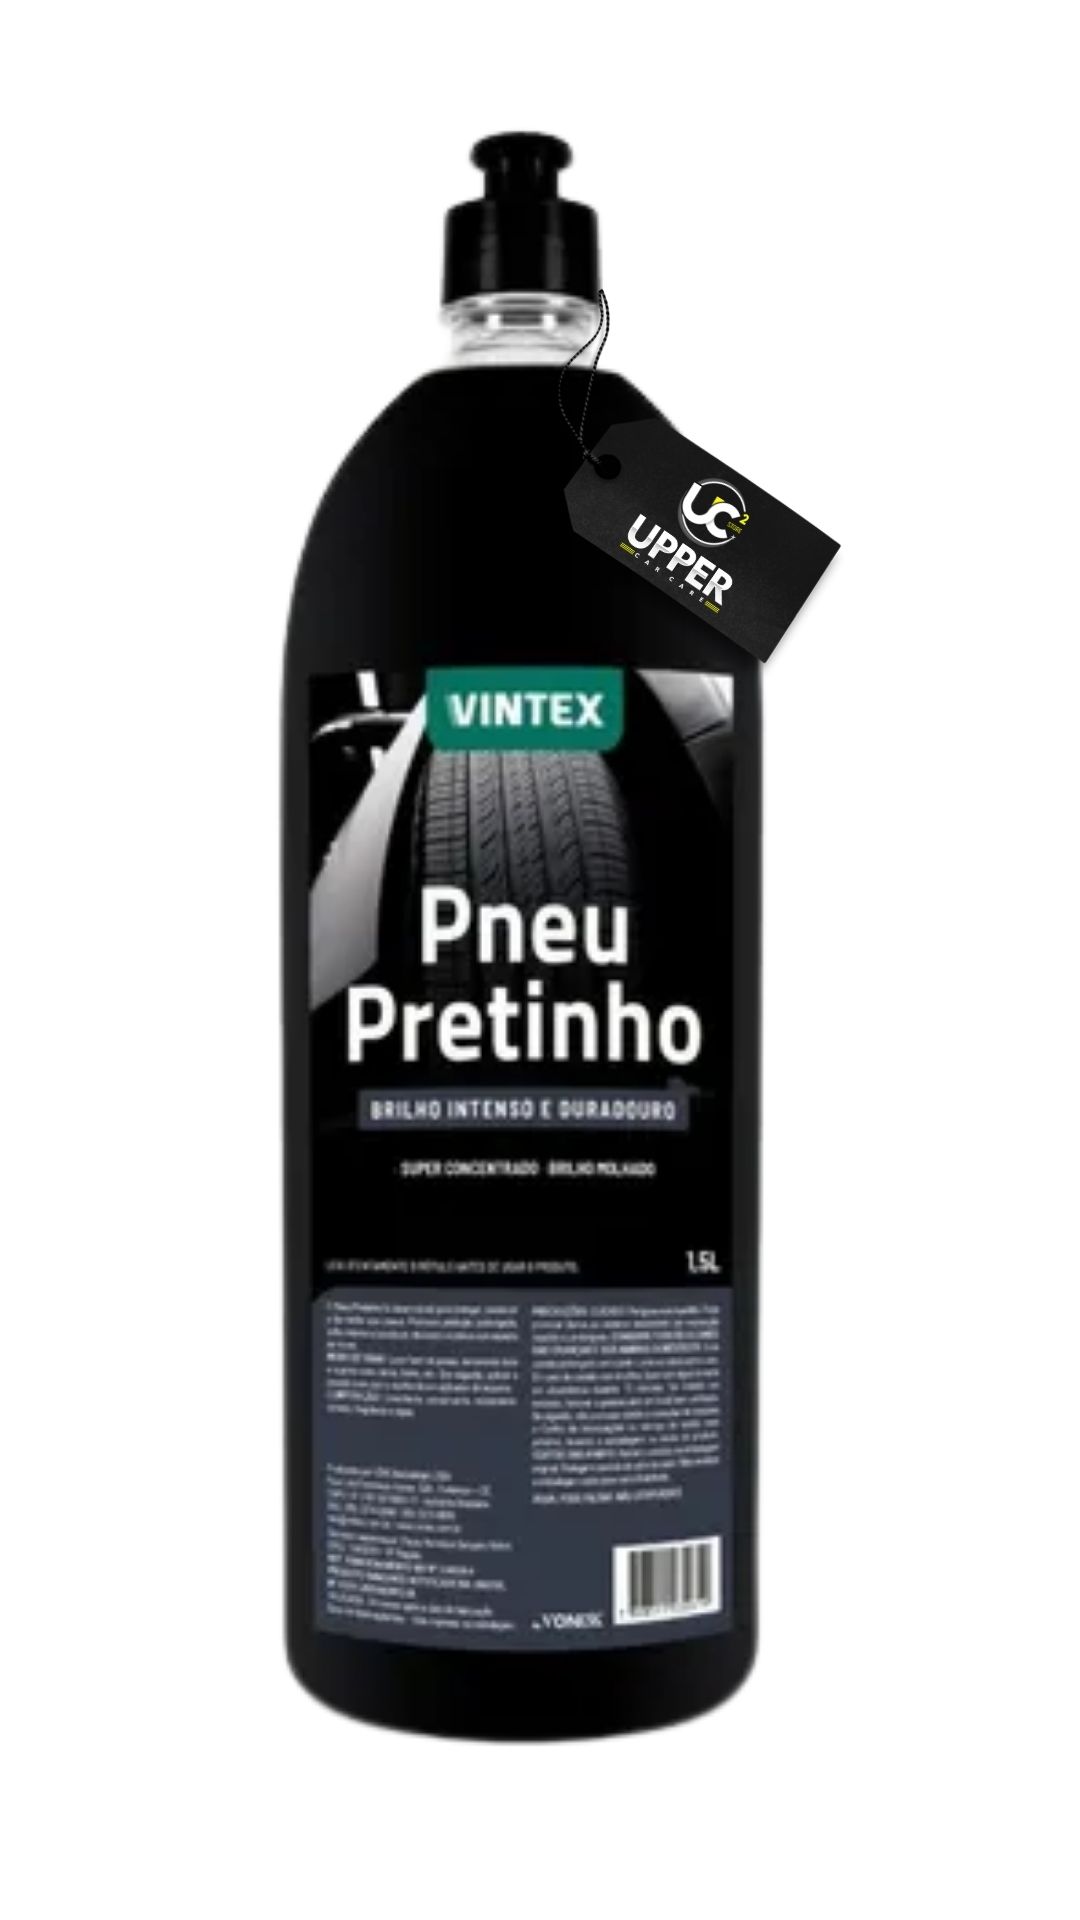 PNEU PRETINHO 1,5L - VINTEX